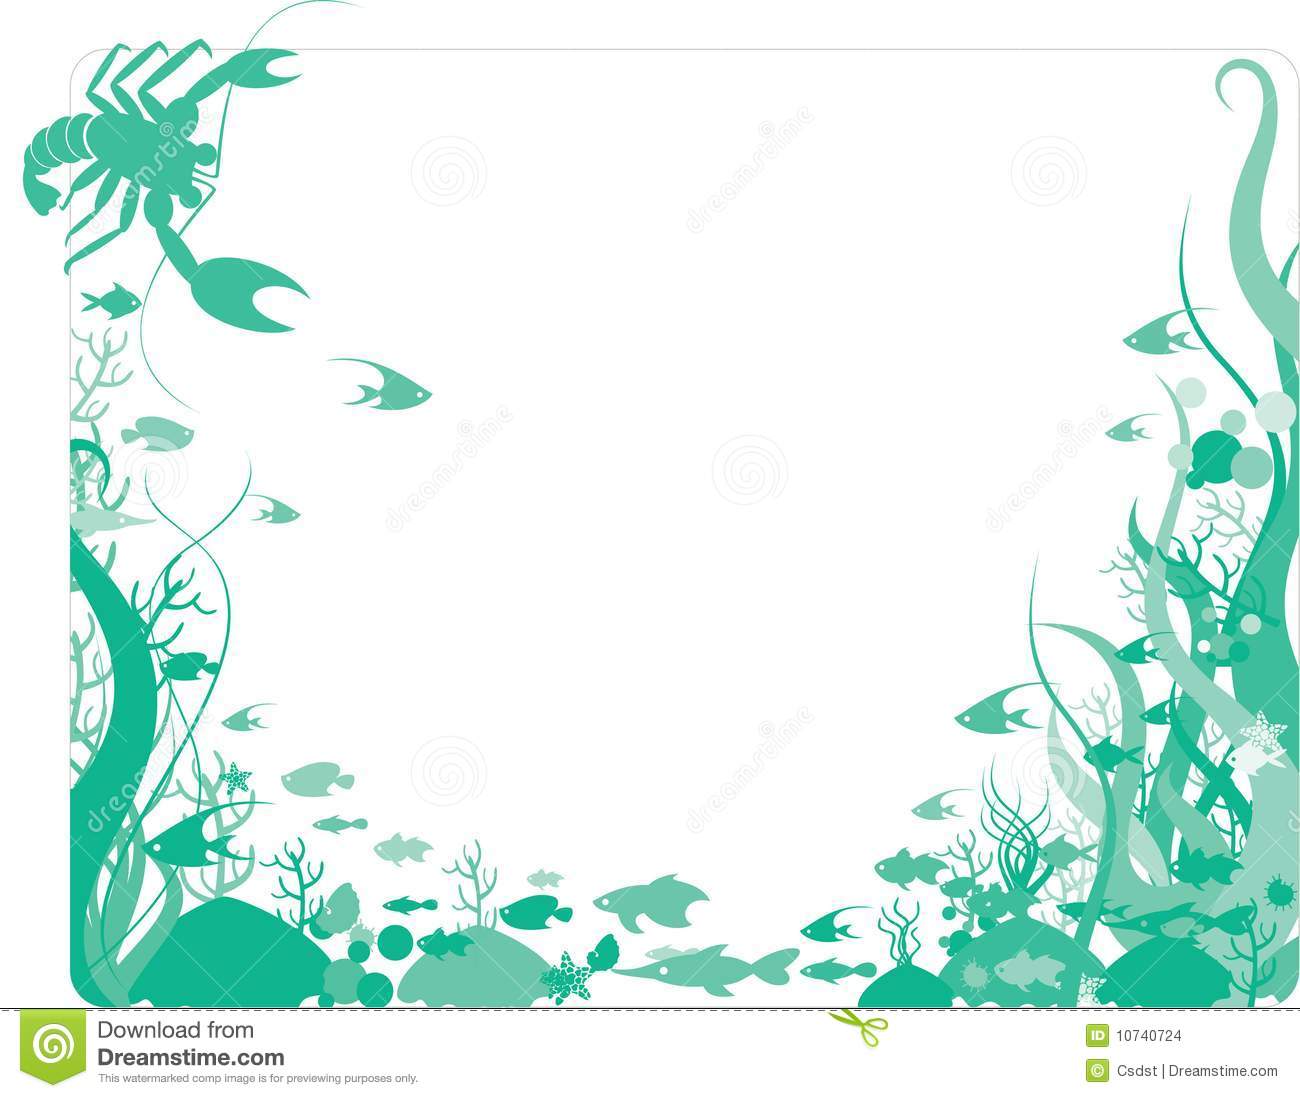 Download 47+ Ocean Themed Wallpaper Borders on WallpaperSafari